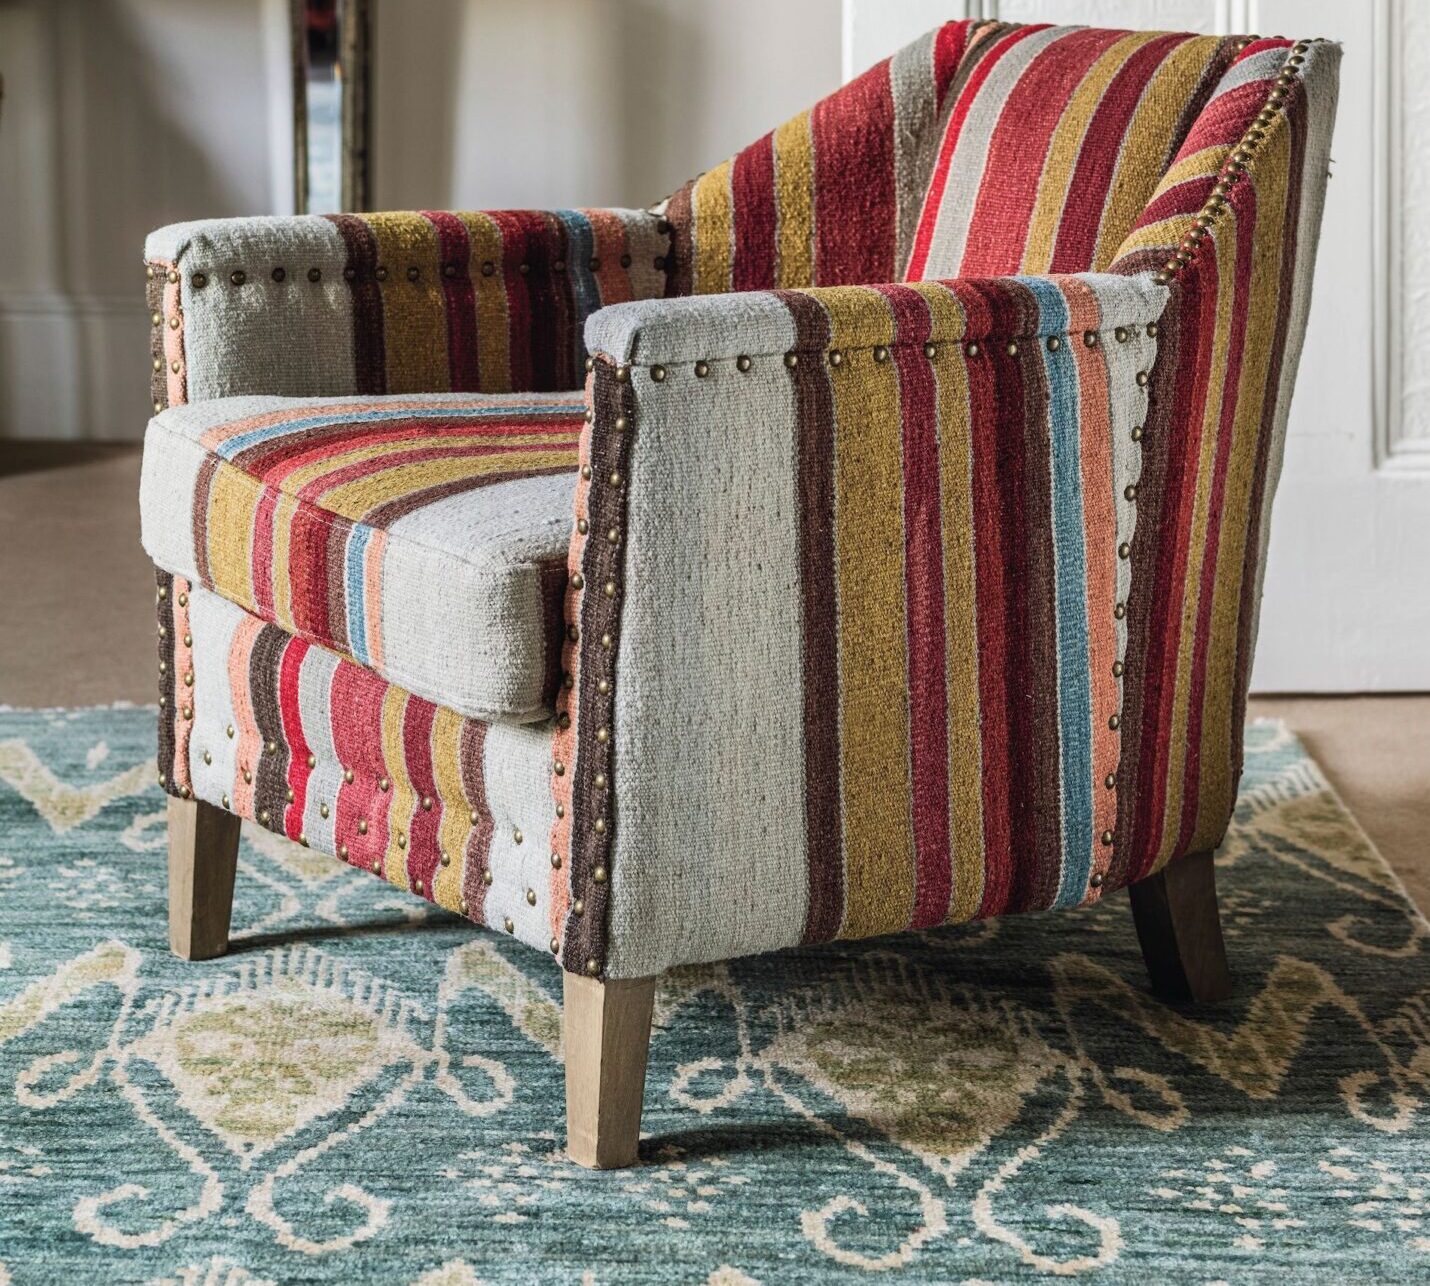 A striped bold OKA armchair